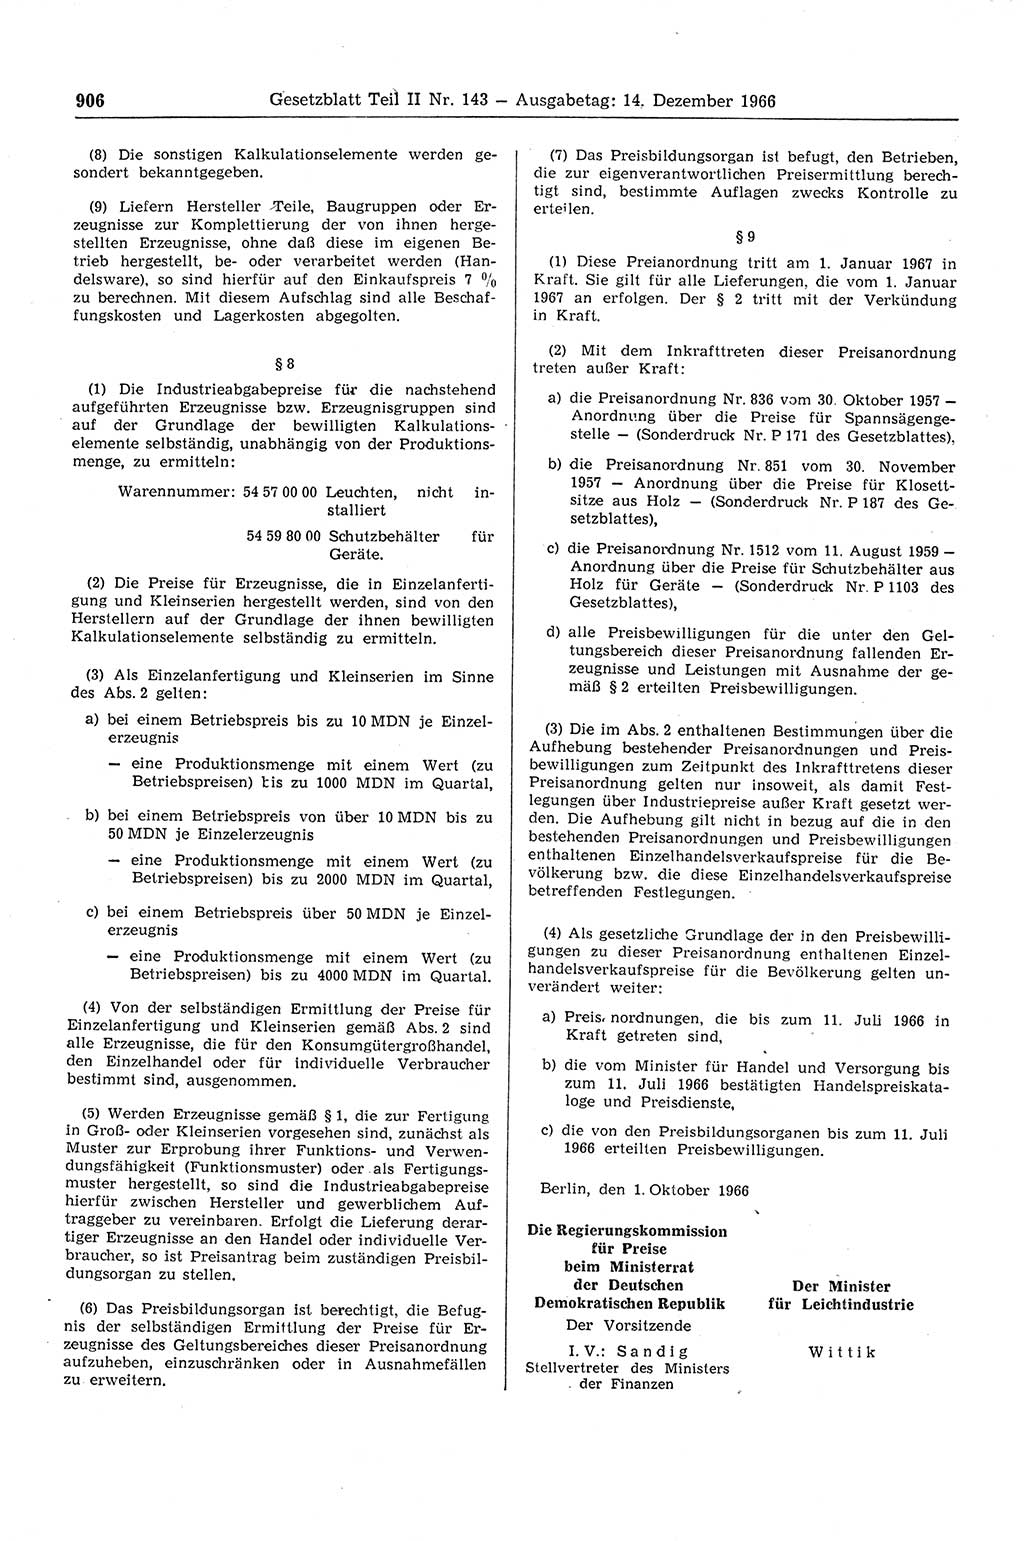 Gesetzblatt (GBl.) der Deutschen Demokratischen Republik (DDR) Teil ⅠⅠ 1966, Seite 906 (GBl. DDR ⅠⅠ 1966, S. 906)